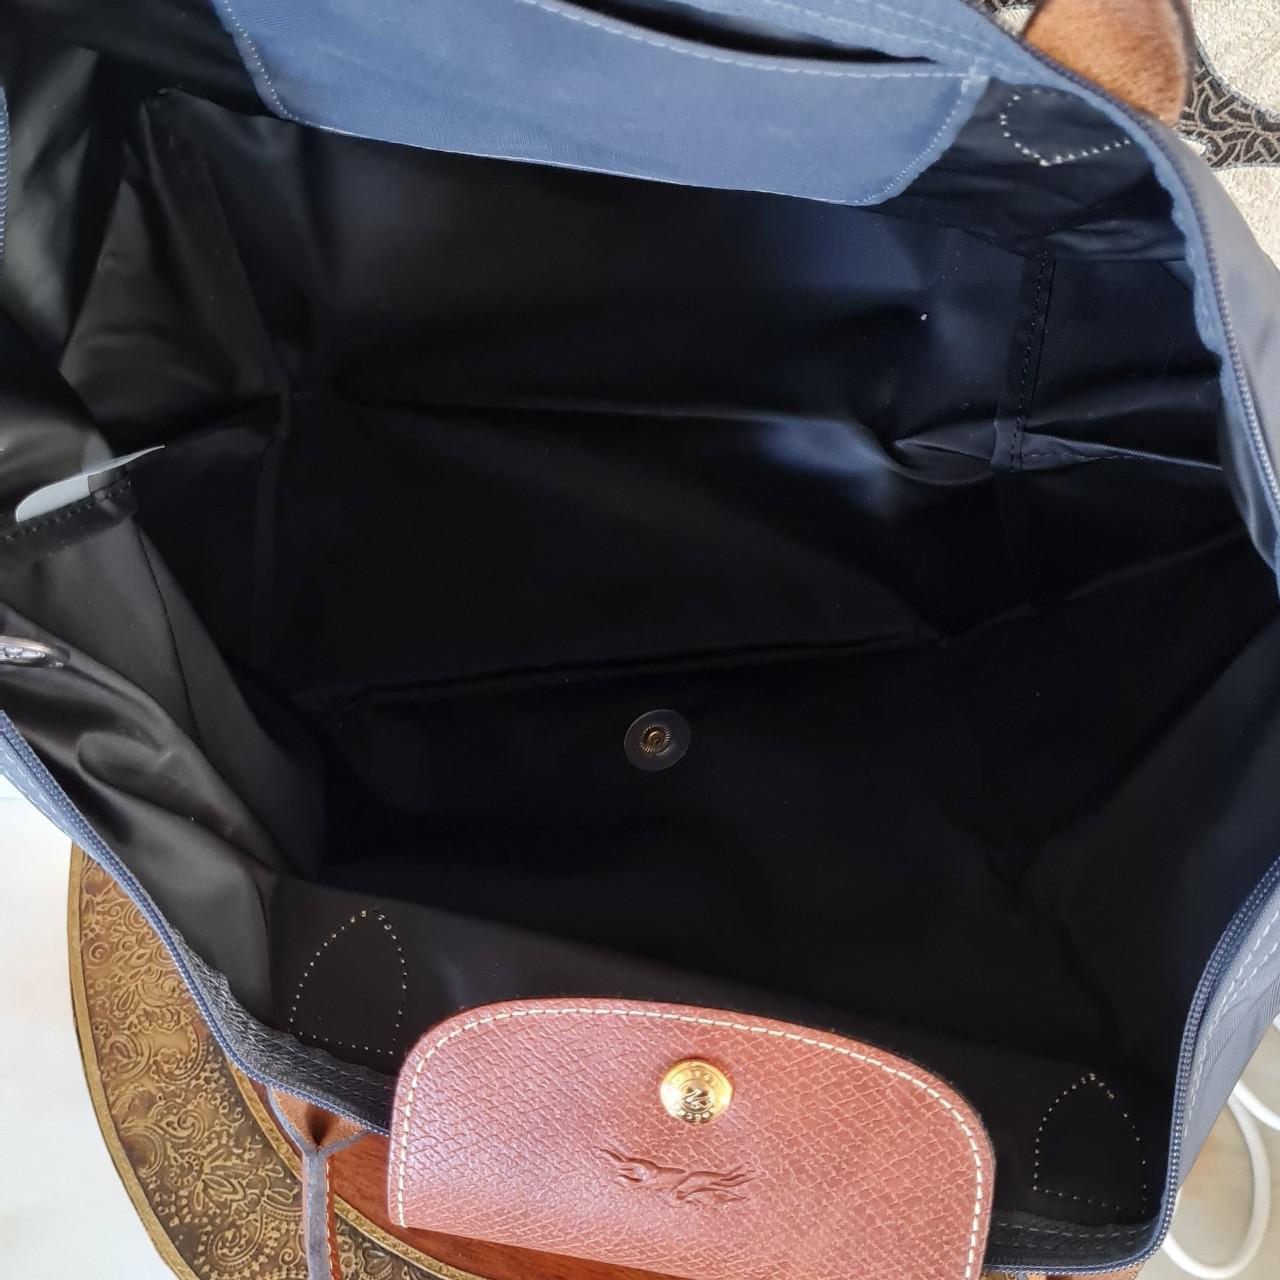 Product Image 2 - Longchamp le pliage canvas handbag.
Charcoal